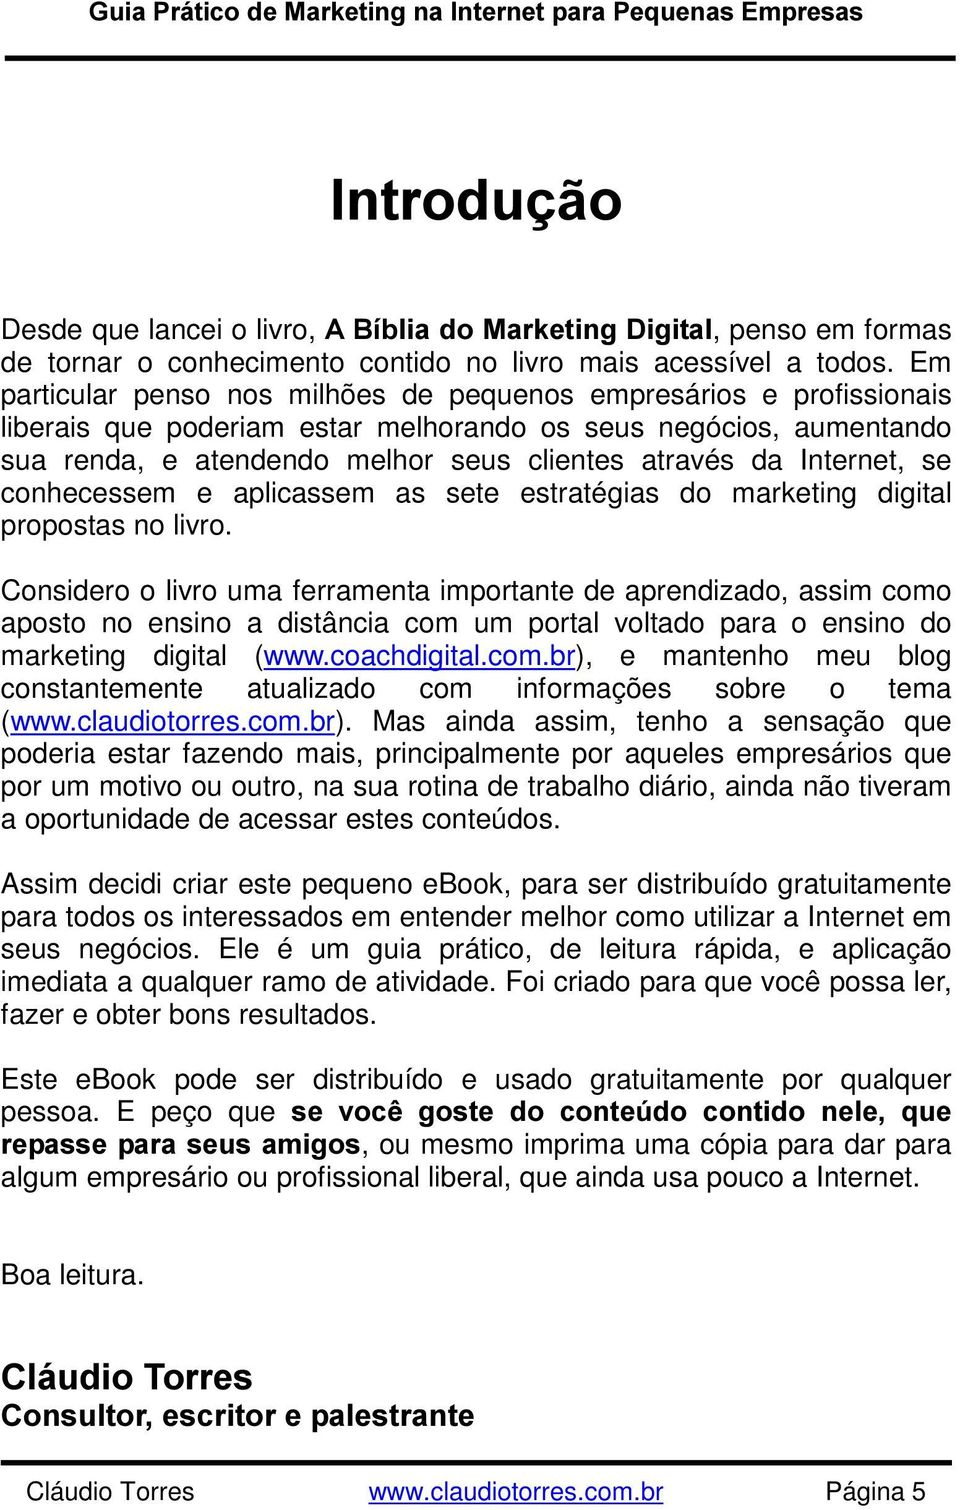 Internet, se conhecessem e aplicassem as sete estratégias do marketing digital propostas no livro.